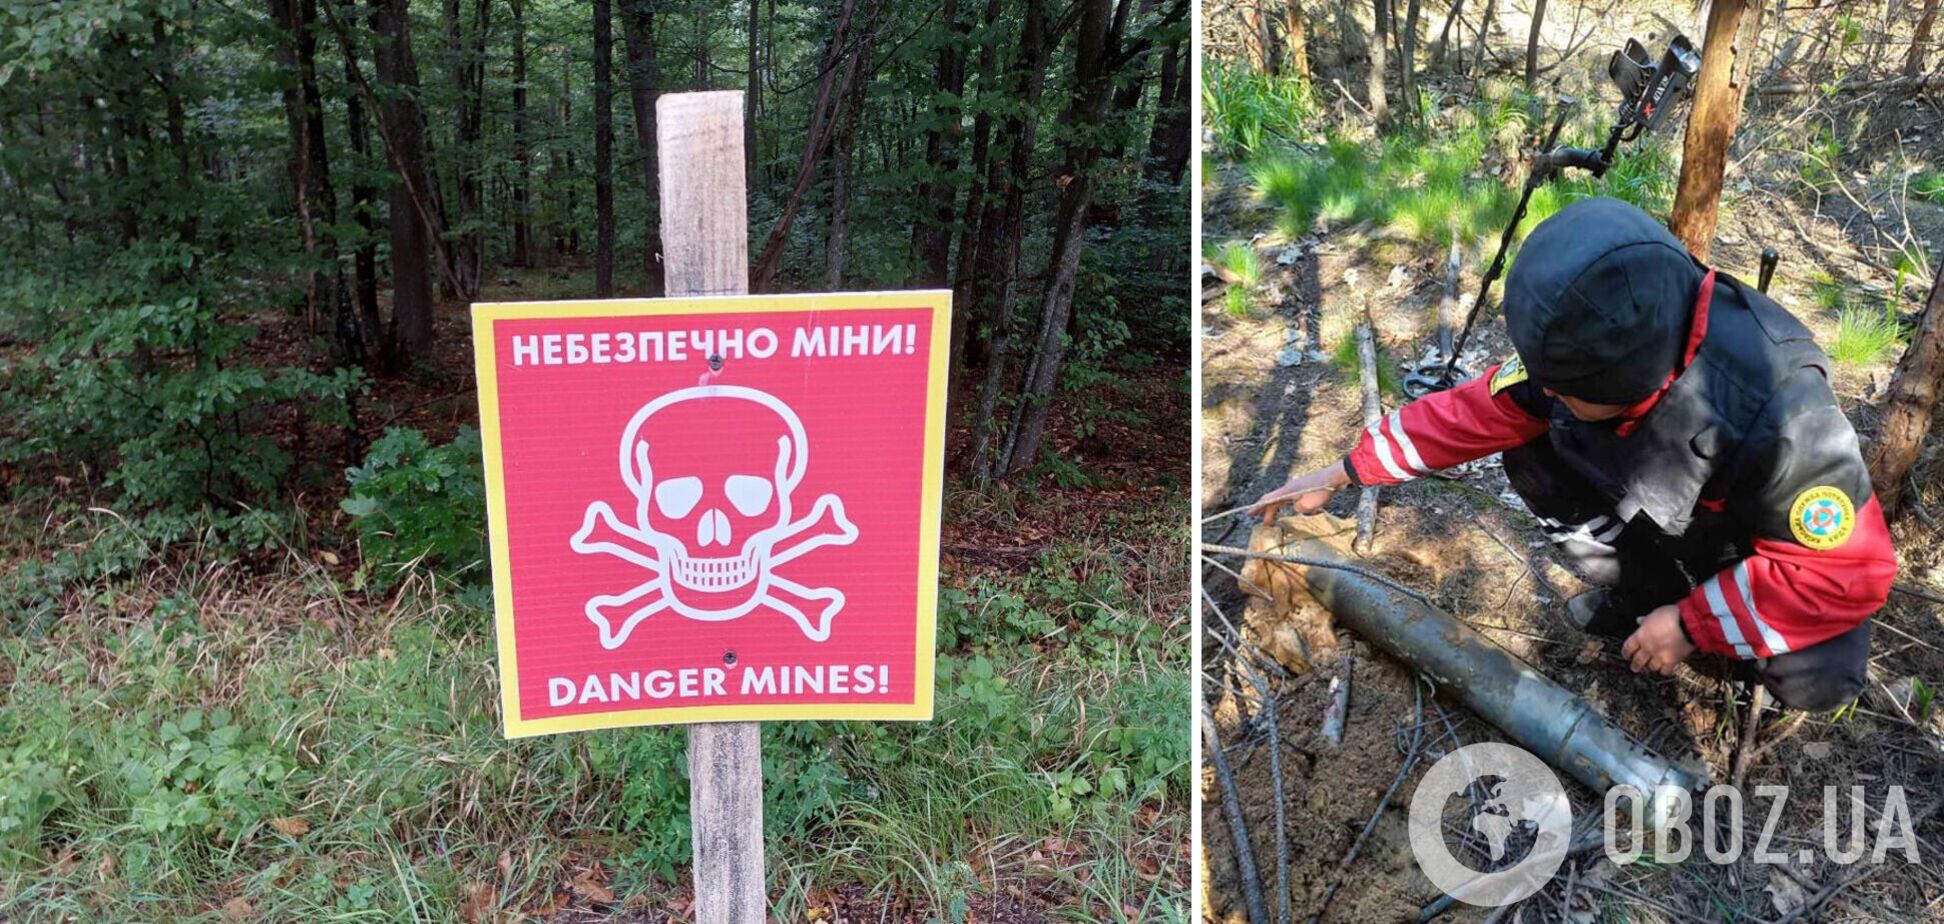 Опасные предметы обнаружили во время обследования леса